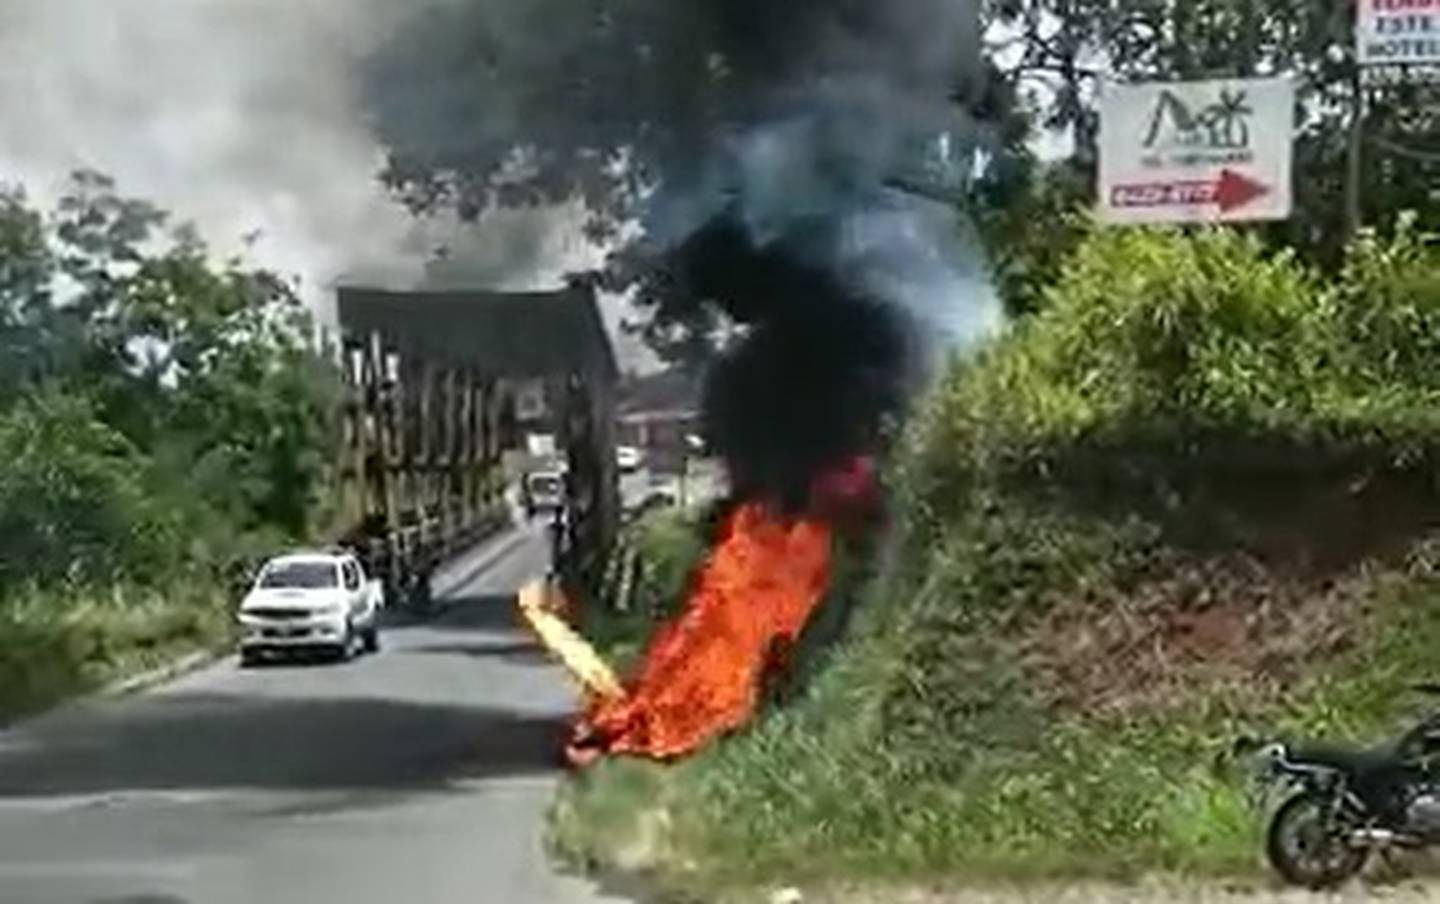 El motociclista sufrió quemaduras en todo su cuerpo. Foto cortesía.